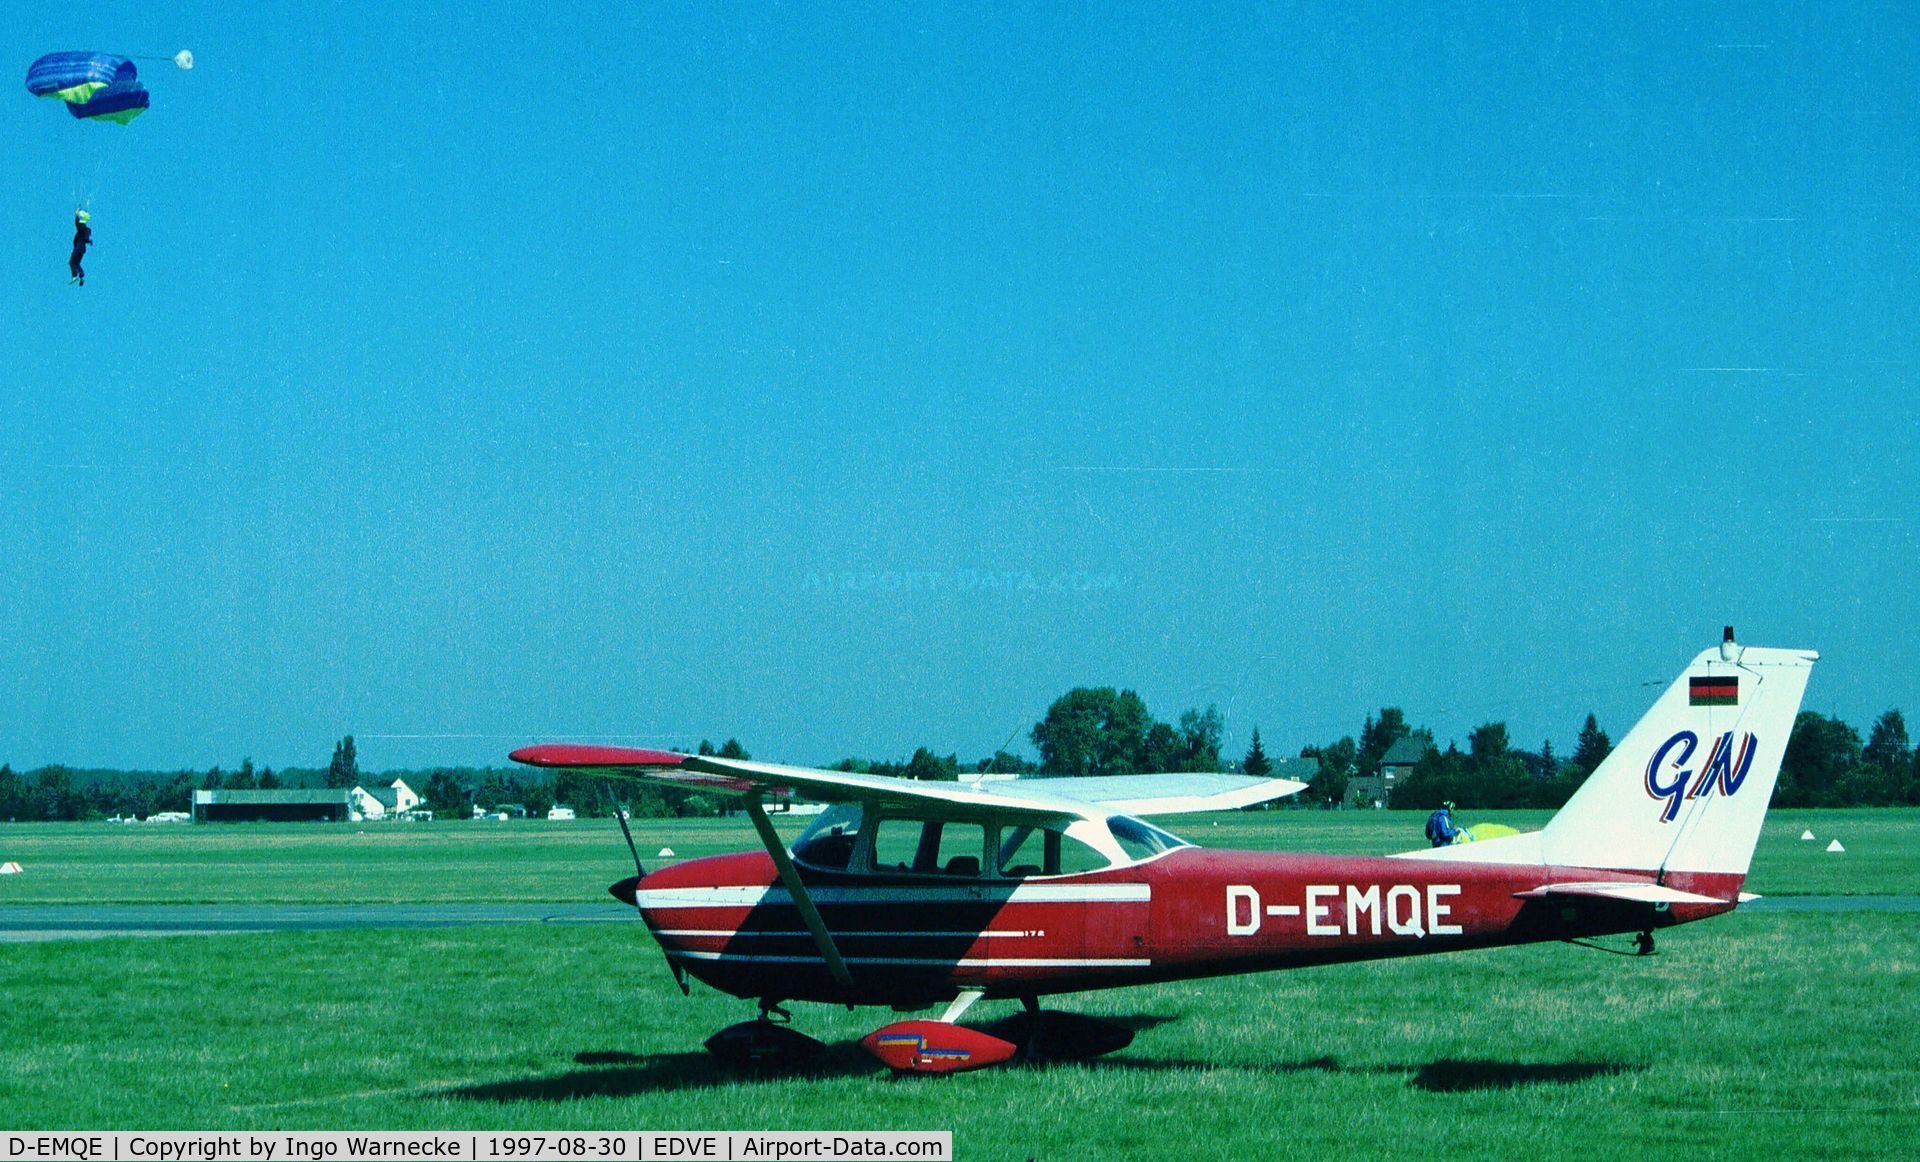 D-EMQE, 1963 Reims F172E Skyhawk C/N 0056, Cessna (Reims) F172E at Braunschweig-Waggum airport